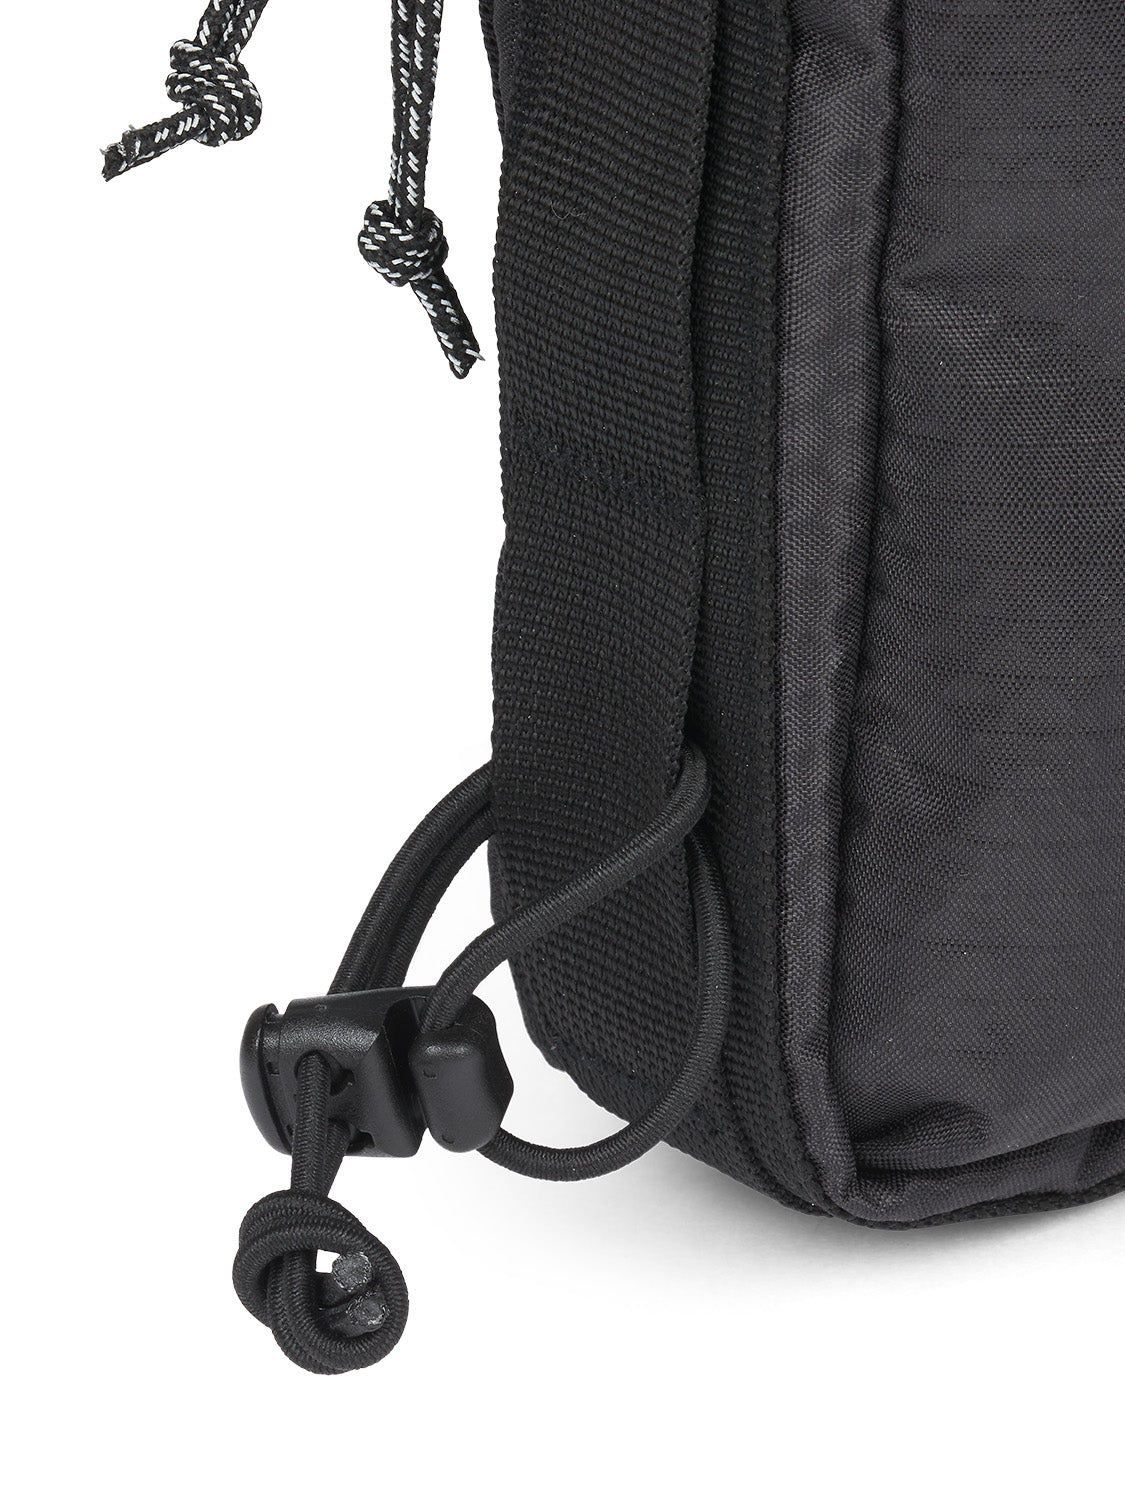 AEVOR-Frame-Bag-Medium-Proof-Black-detail